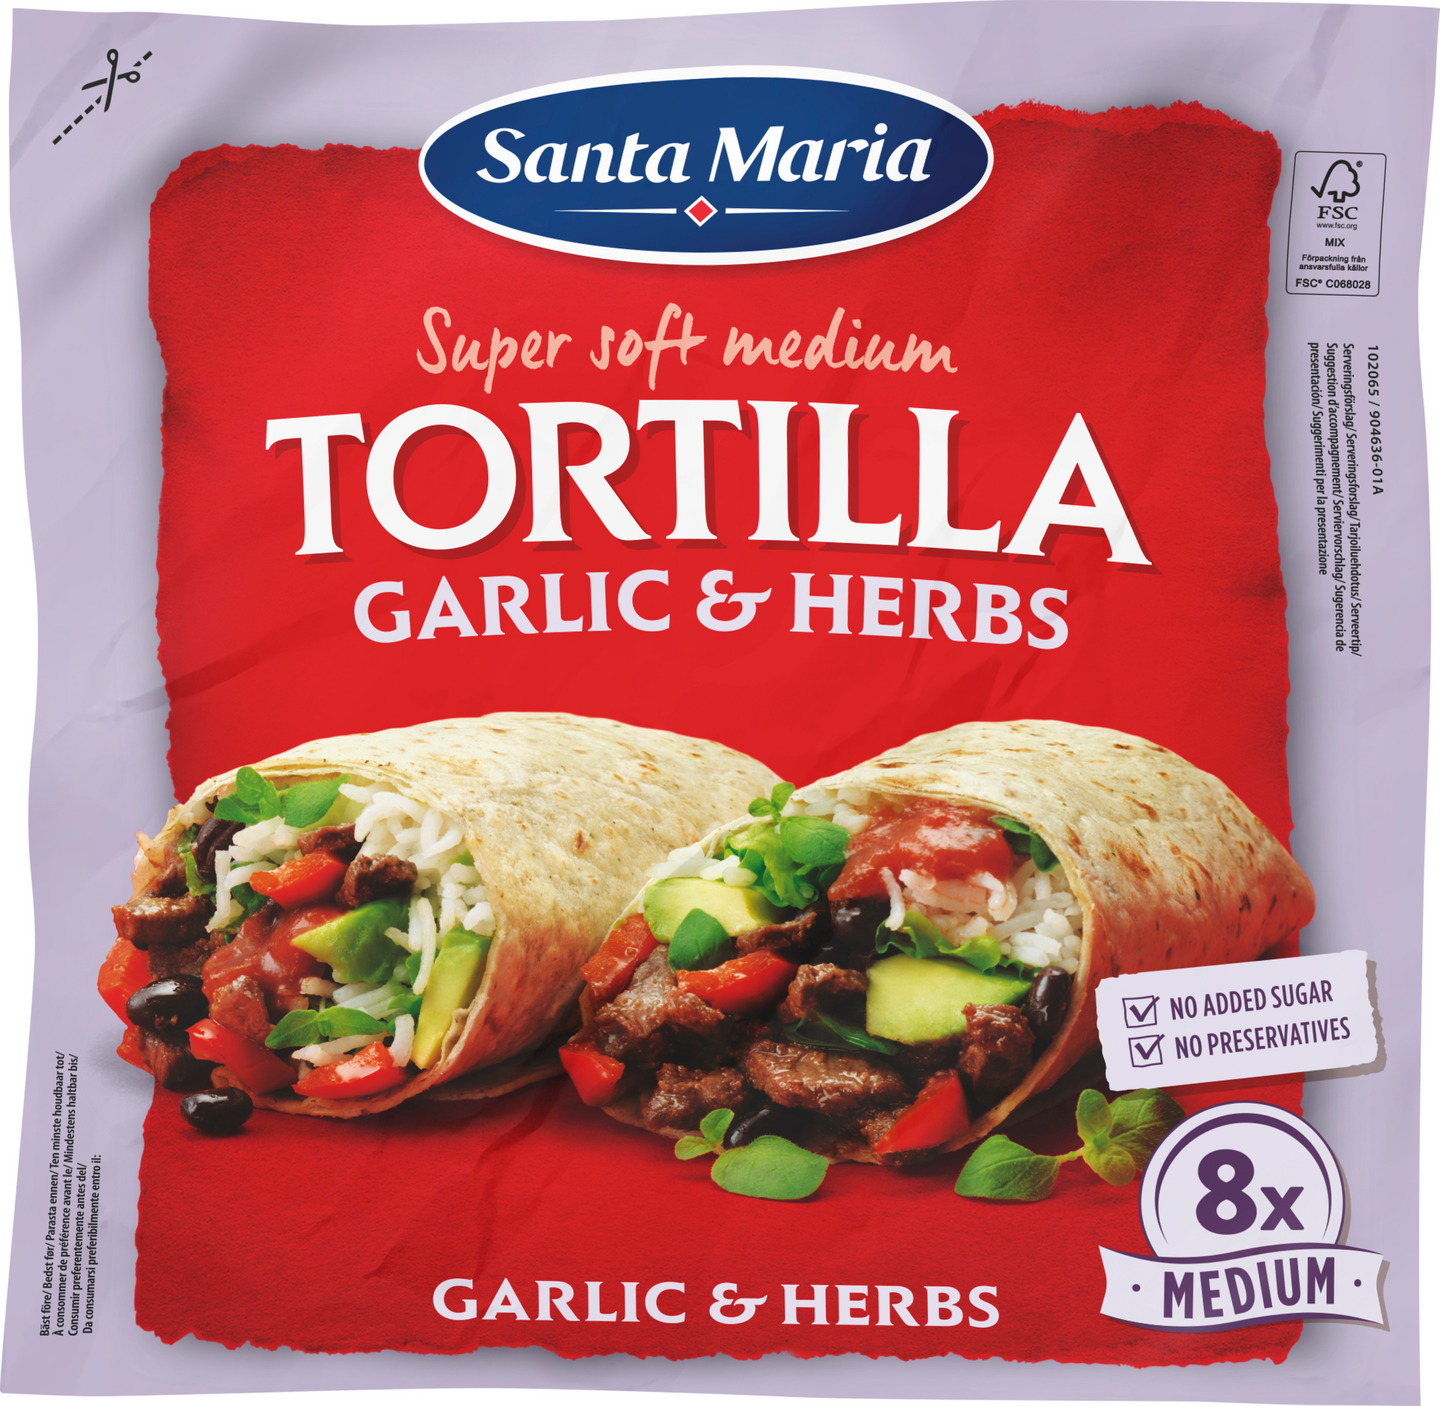 Santa Maria Tortilla Garlic & Herbs Medium (8 pack), vehnätortilla valkosipuli & yrtit, 320g